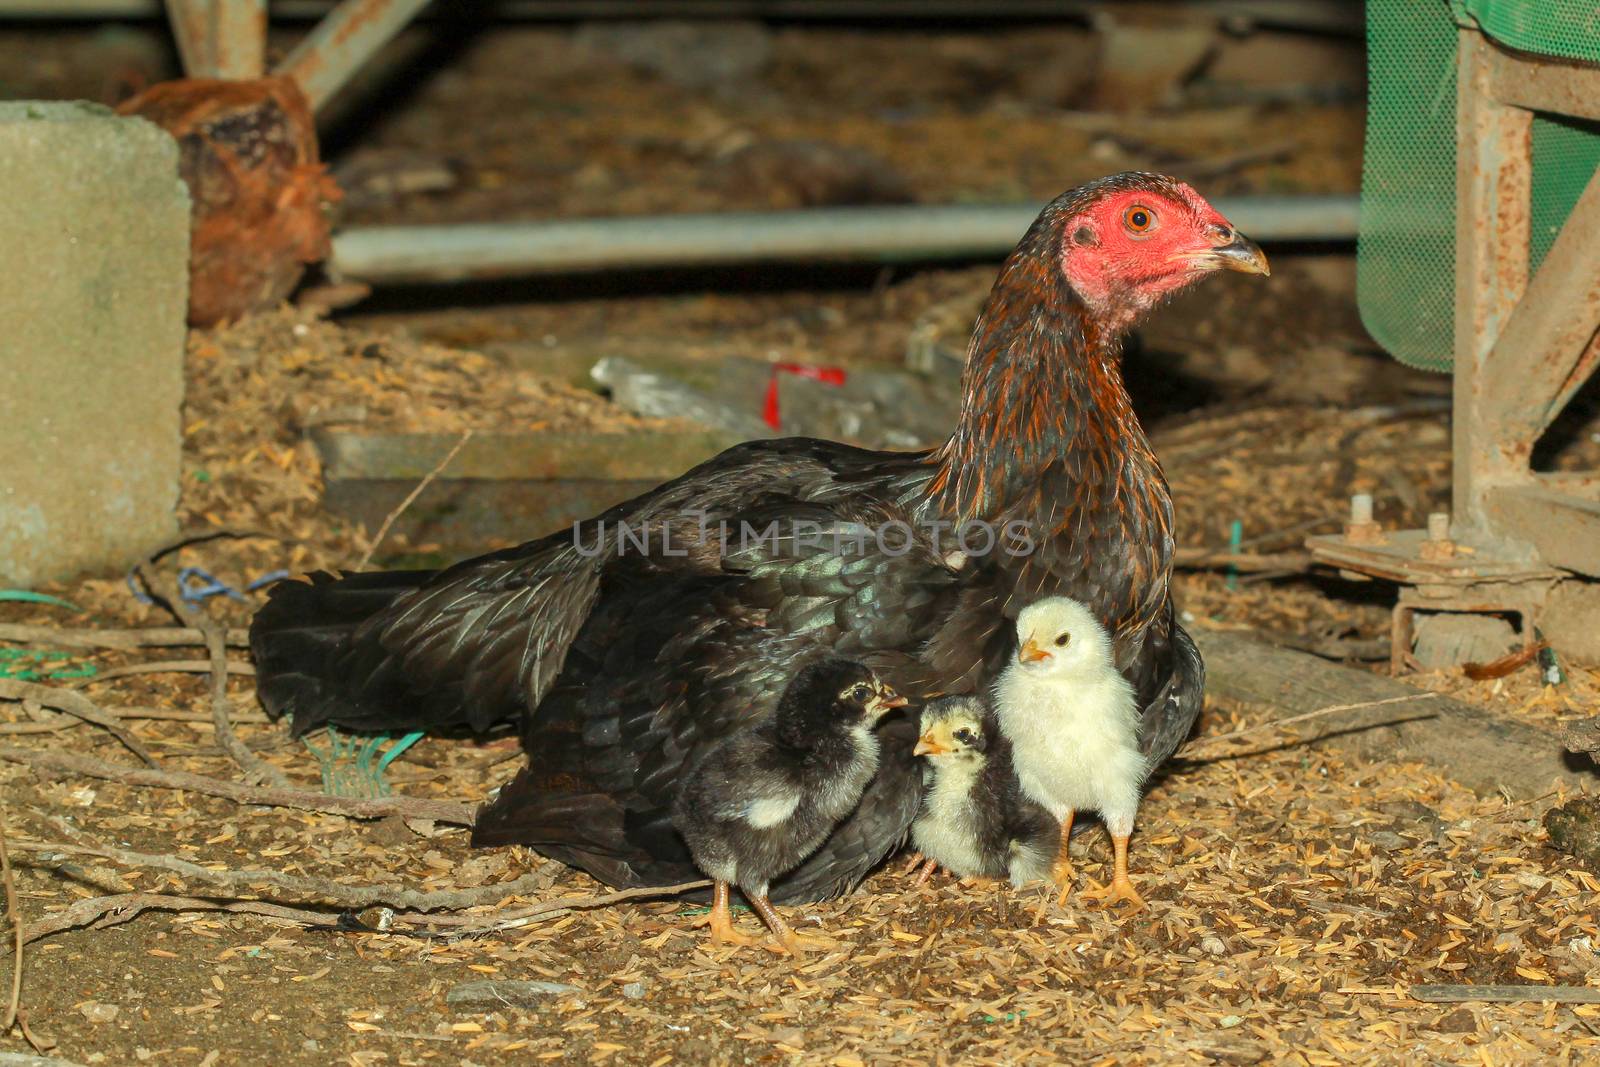 Hen fighting cock raising baby chick